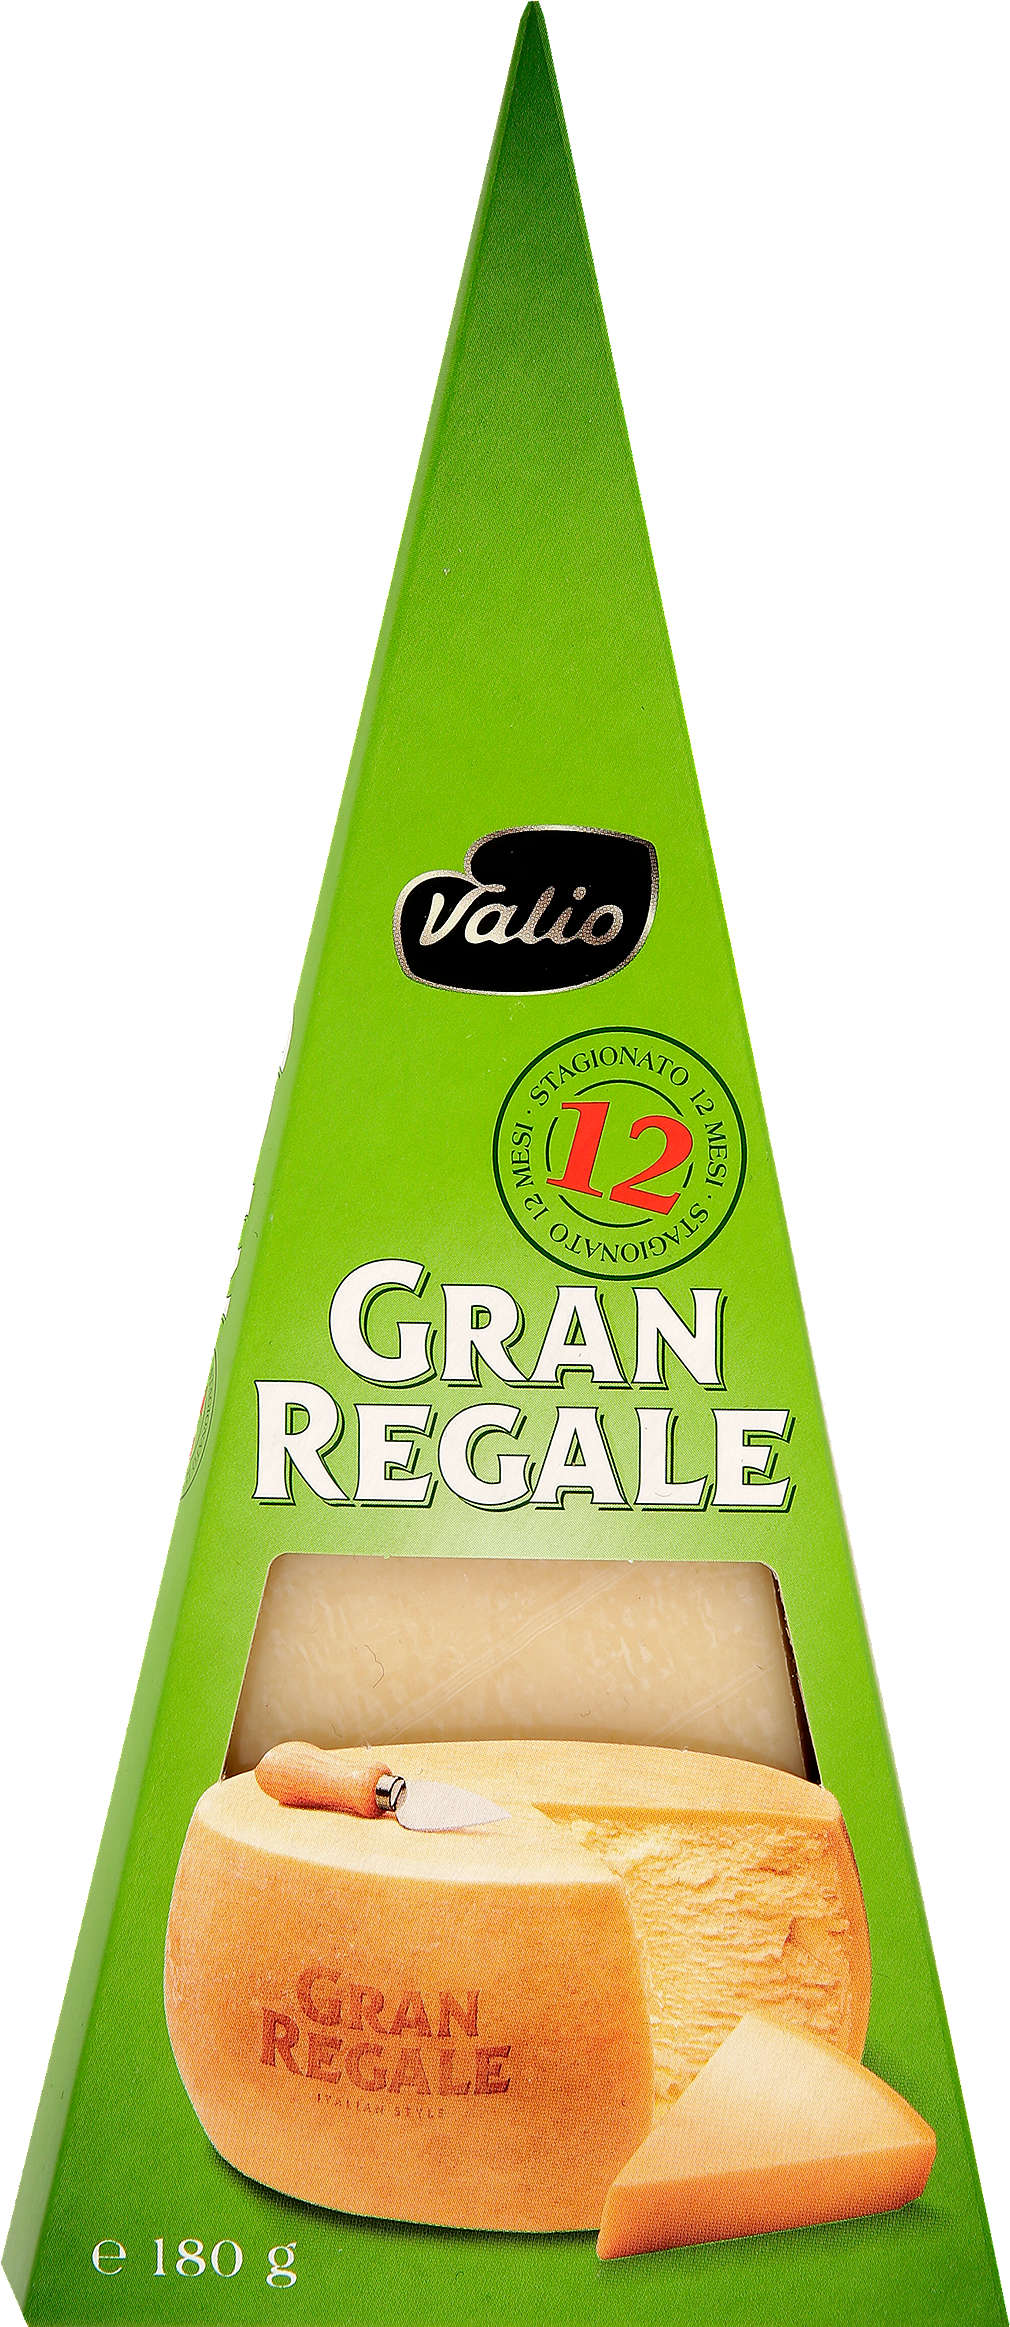 Zobrazit nabídku Gran Regale Tvrdý sýr 12 měsíců